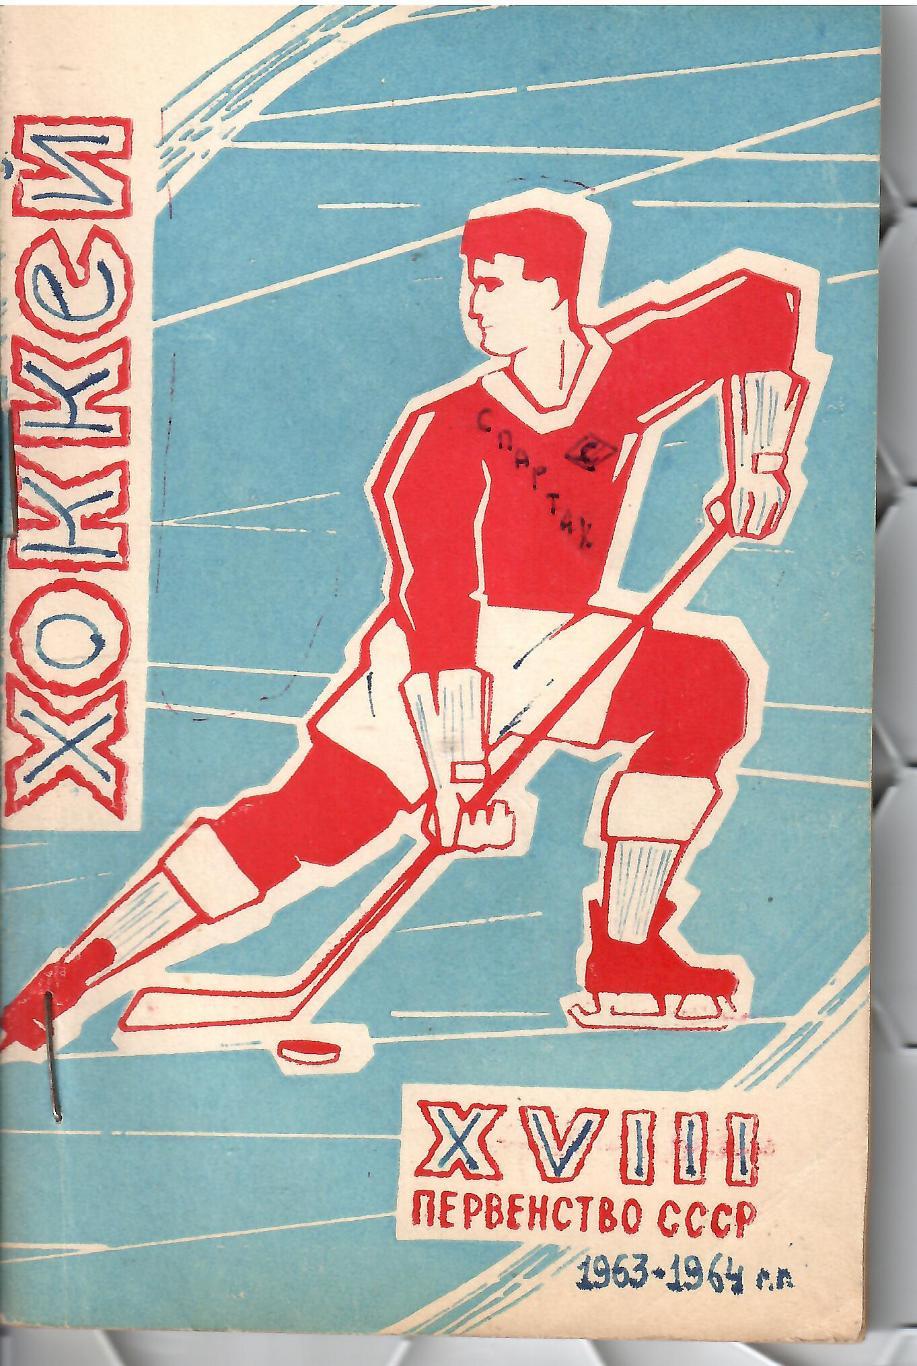 1963 Календарь-справочник Хоккей Лужники 49 стр